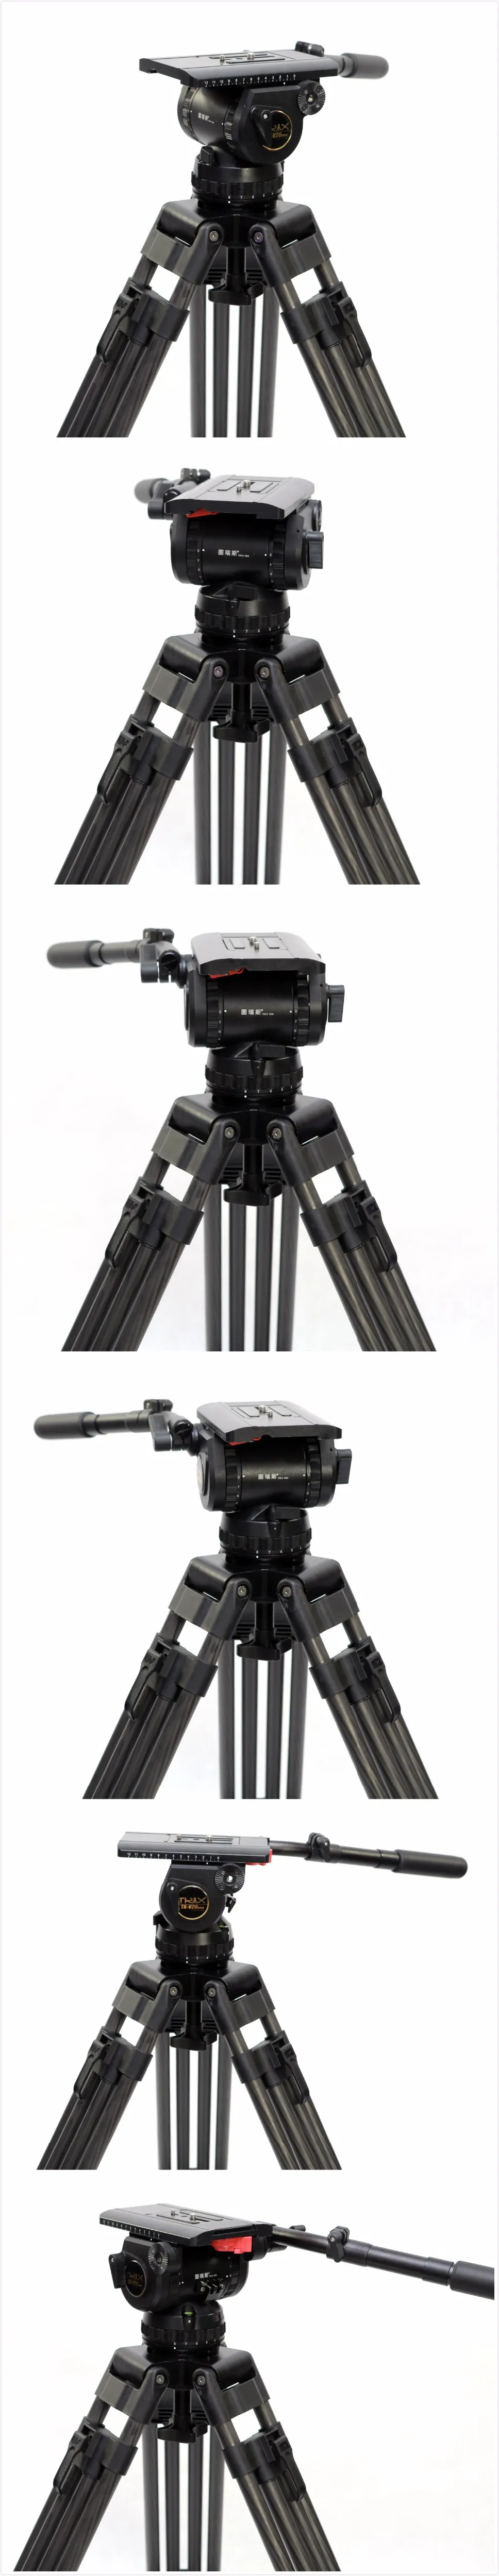 23046円 国内送料無料 三脚 ビデオカメラカメラ 表を使用するプロフェッショナルヘビーデューティカーボンファイバー三脚